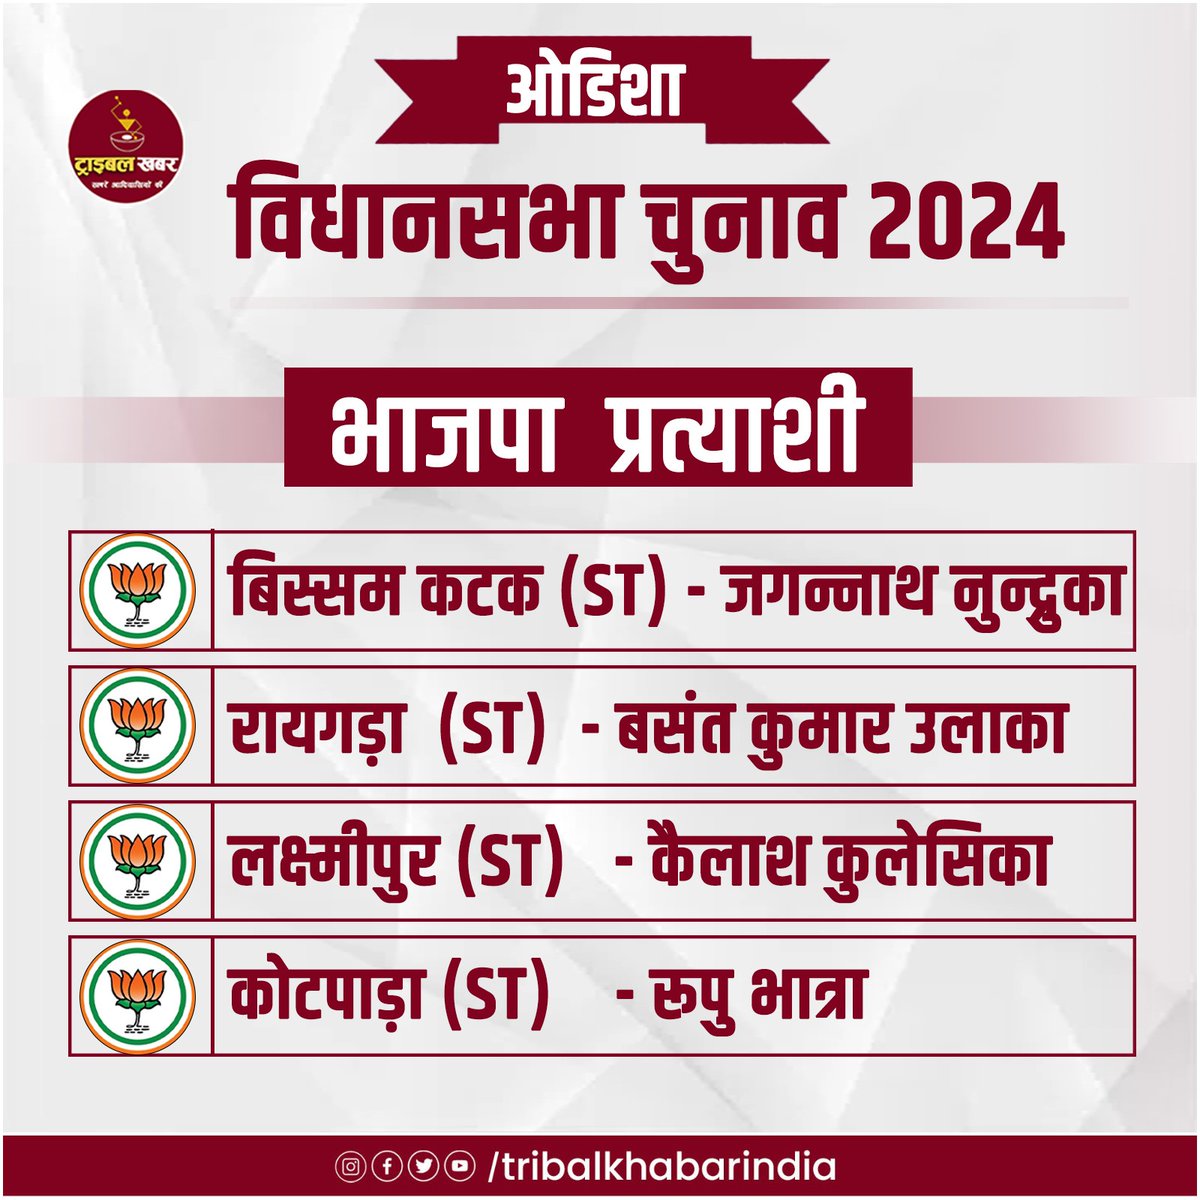 ओडिशा विधानसभा चुनाव 2024 को लेकर भाजपा ने अपने  प्रत्याशियों की घोषणा कर दी है. 
बिस्सम कटक (अजजा)  - जगन्नाथ नुन्द्रुका
रायगड़ा (अजजा)  - बसंत कुमार उलाका
लक्ष्मीपुर (अजजा)  - कैलाश कुलेसिका
कोटपाड़ा (अजजा) - रूपु भात्रा #OdishaElections2024 #vidhansabhaelection